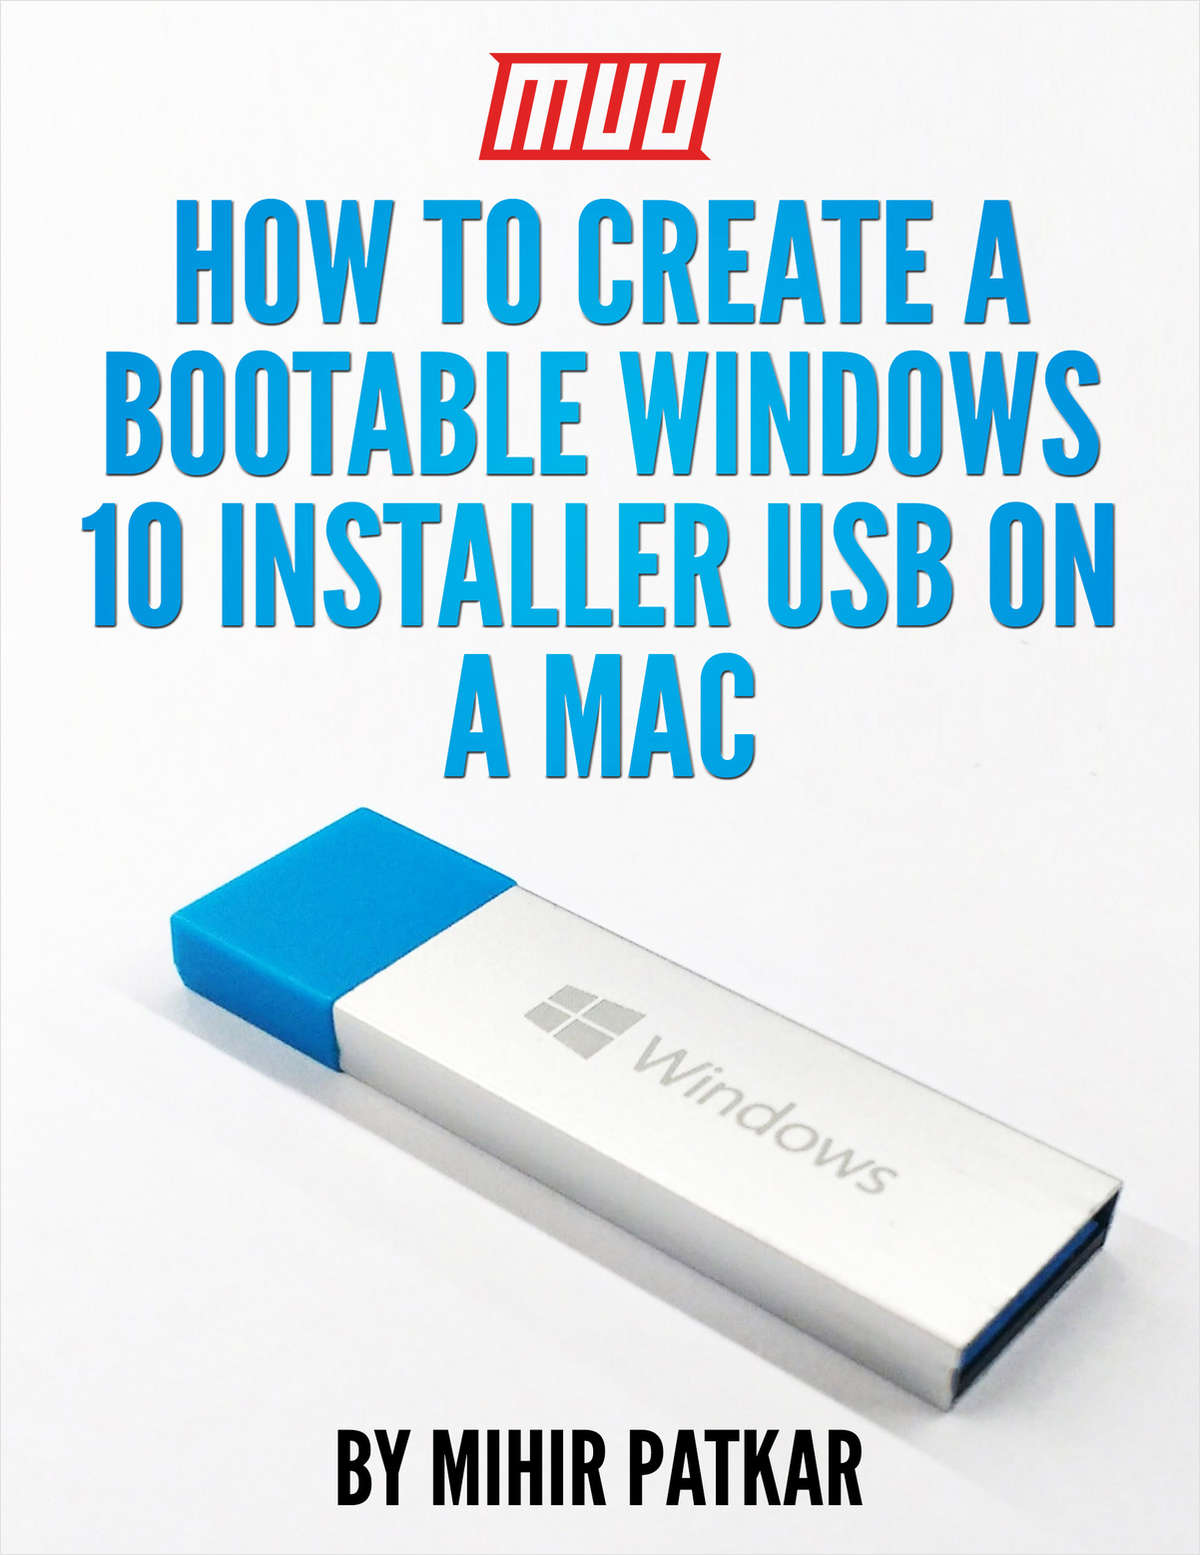 windows 10 bootable usb tool